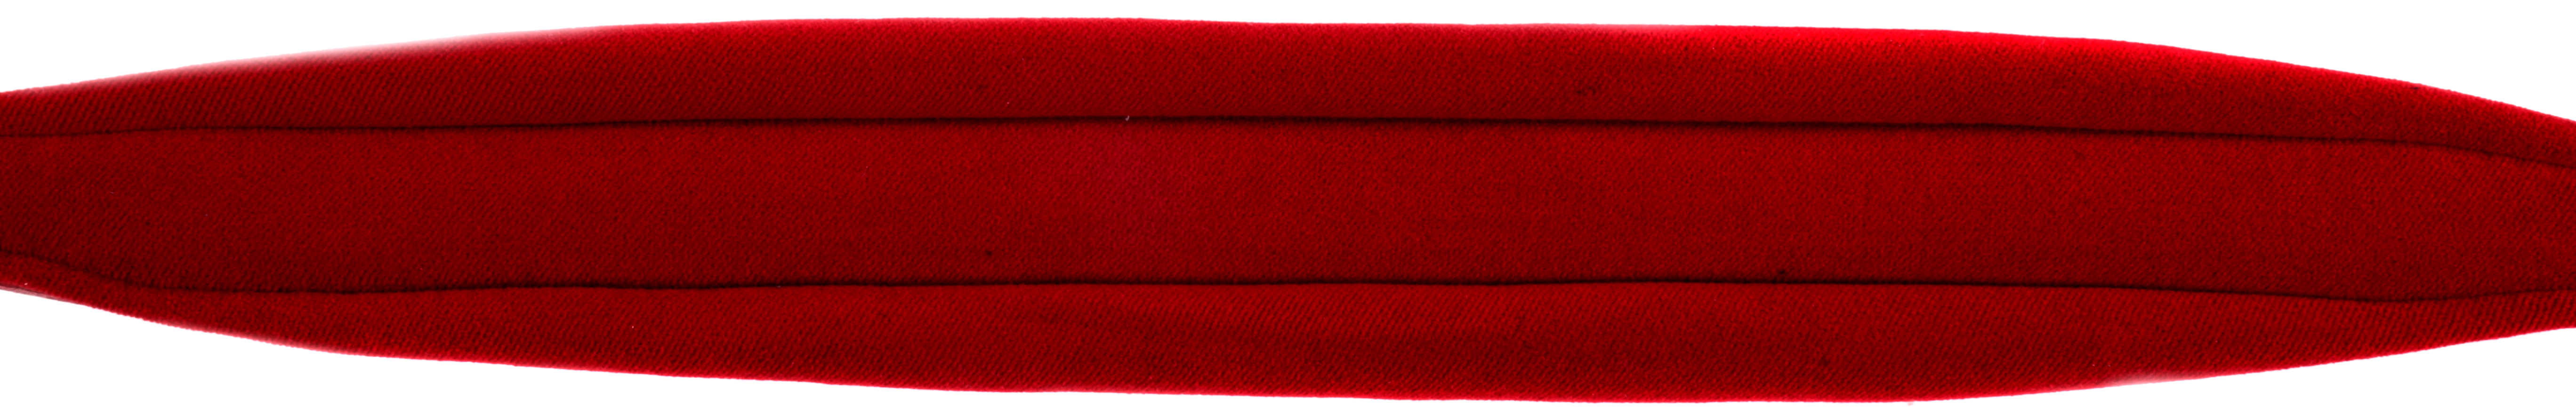 Akkordeon Trageriemen  Rindleder rot Rindleder und Samtpolster rot 7,5 cm Breit.